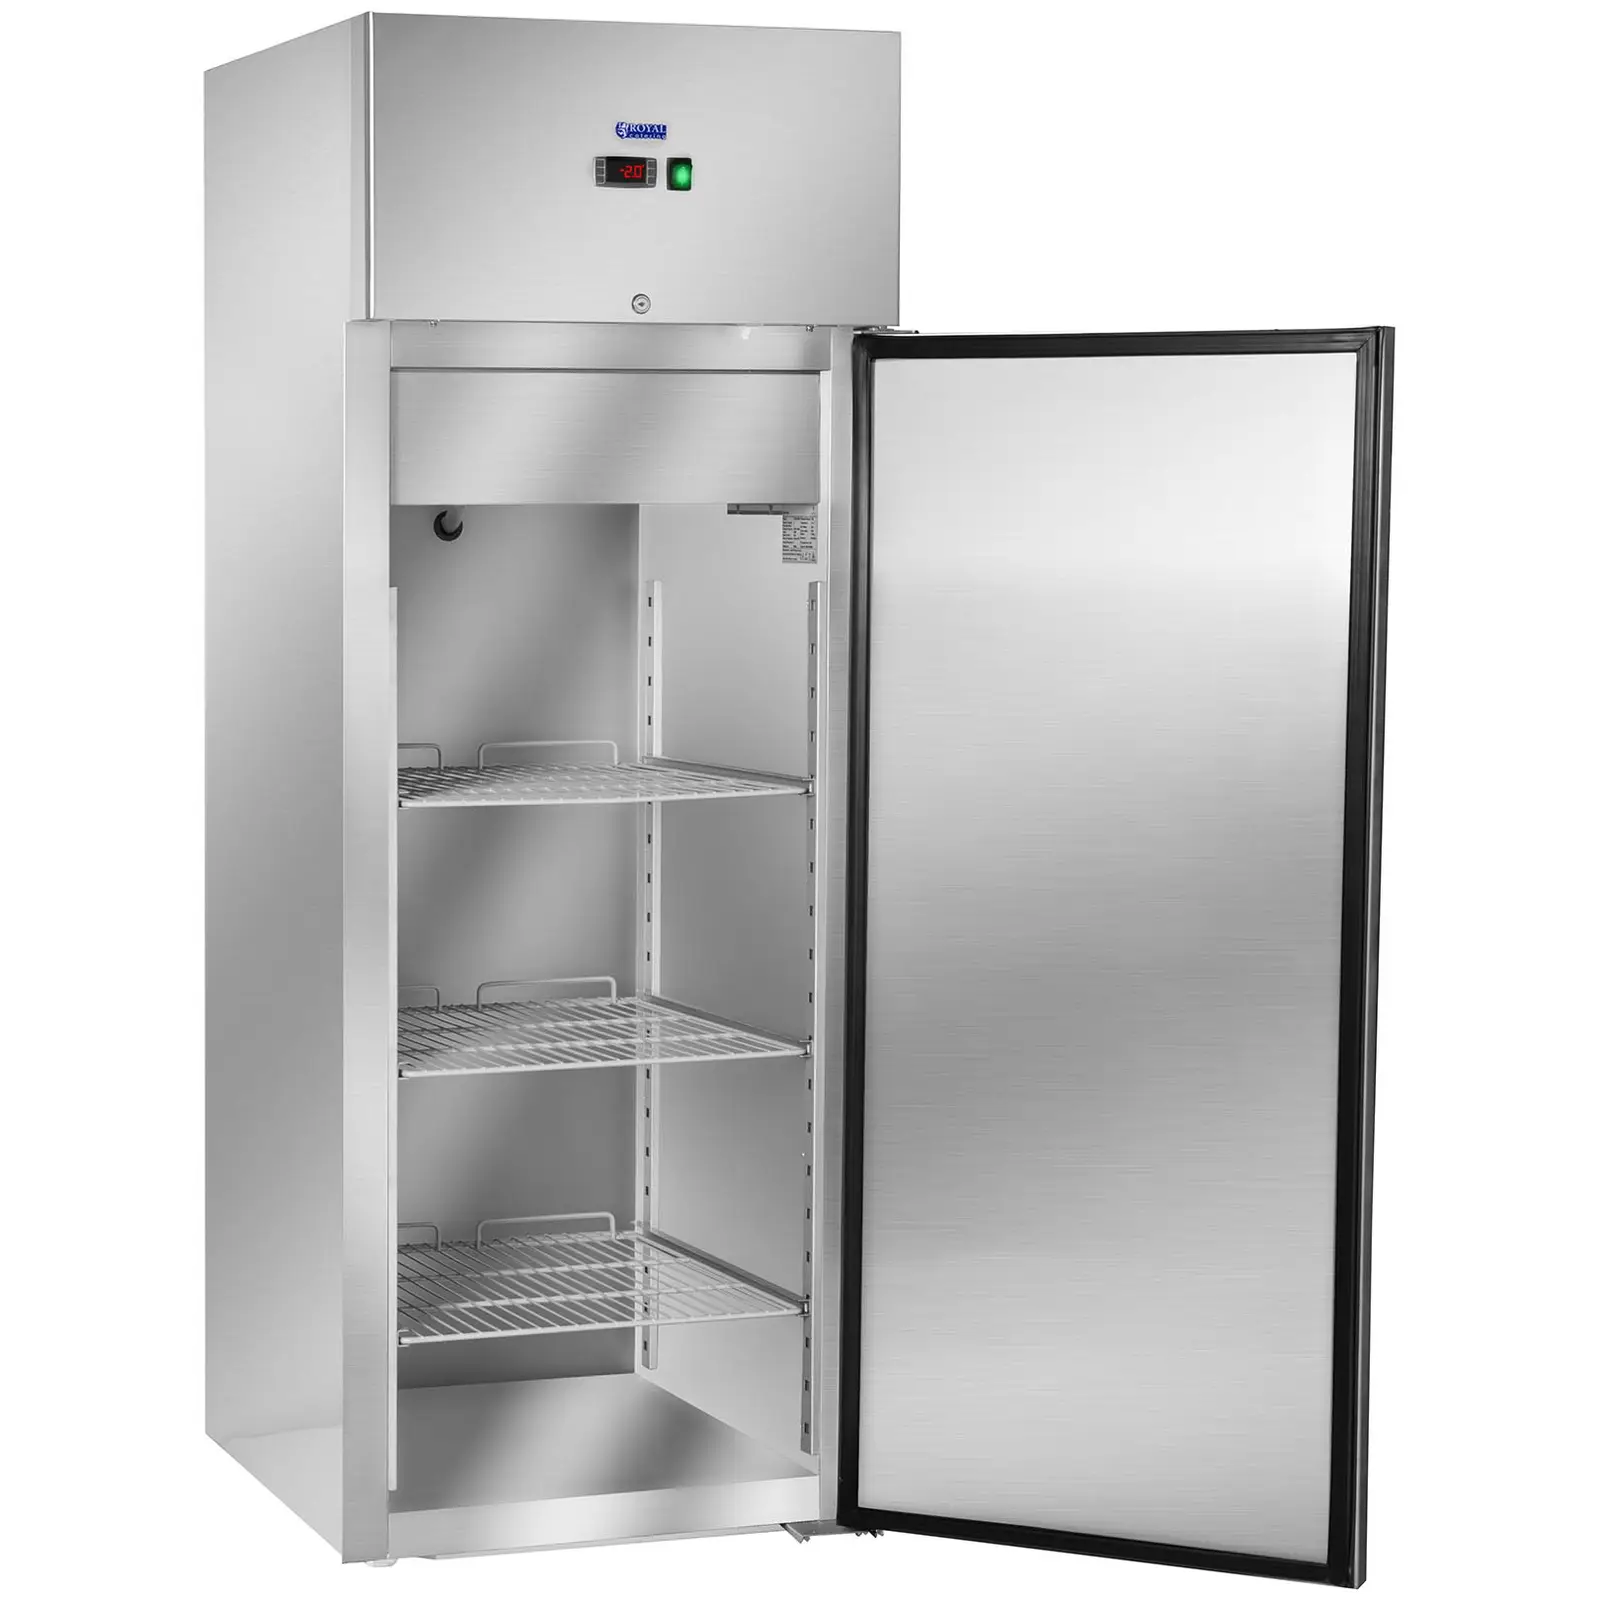 Vendéglátóipari hűtőszekrény - 540 l - rozsdamentes acél | Royal Catering